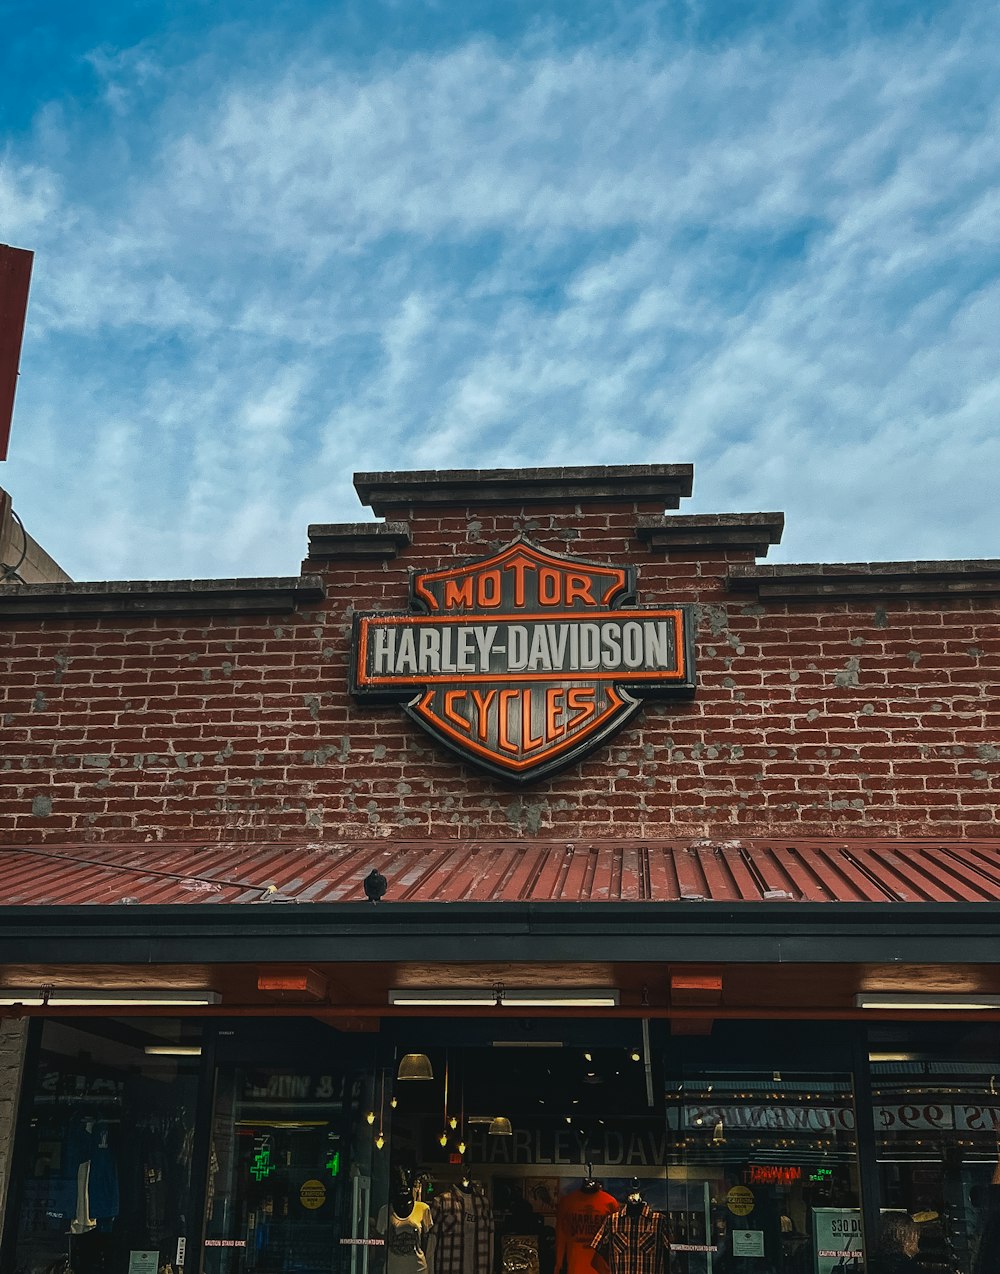 Un bâtiment en brique avec un panneau indiquant Harley Davidson Cycles